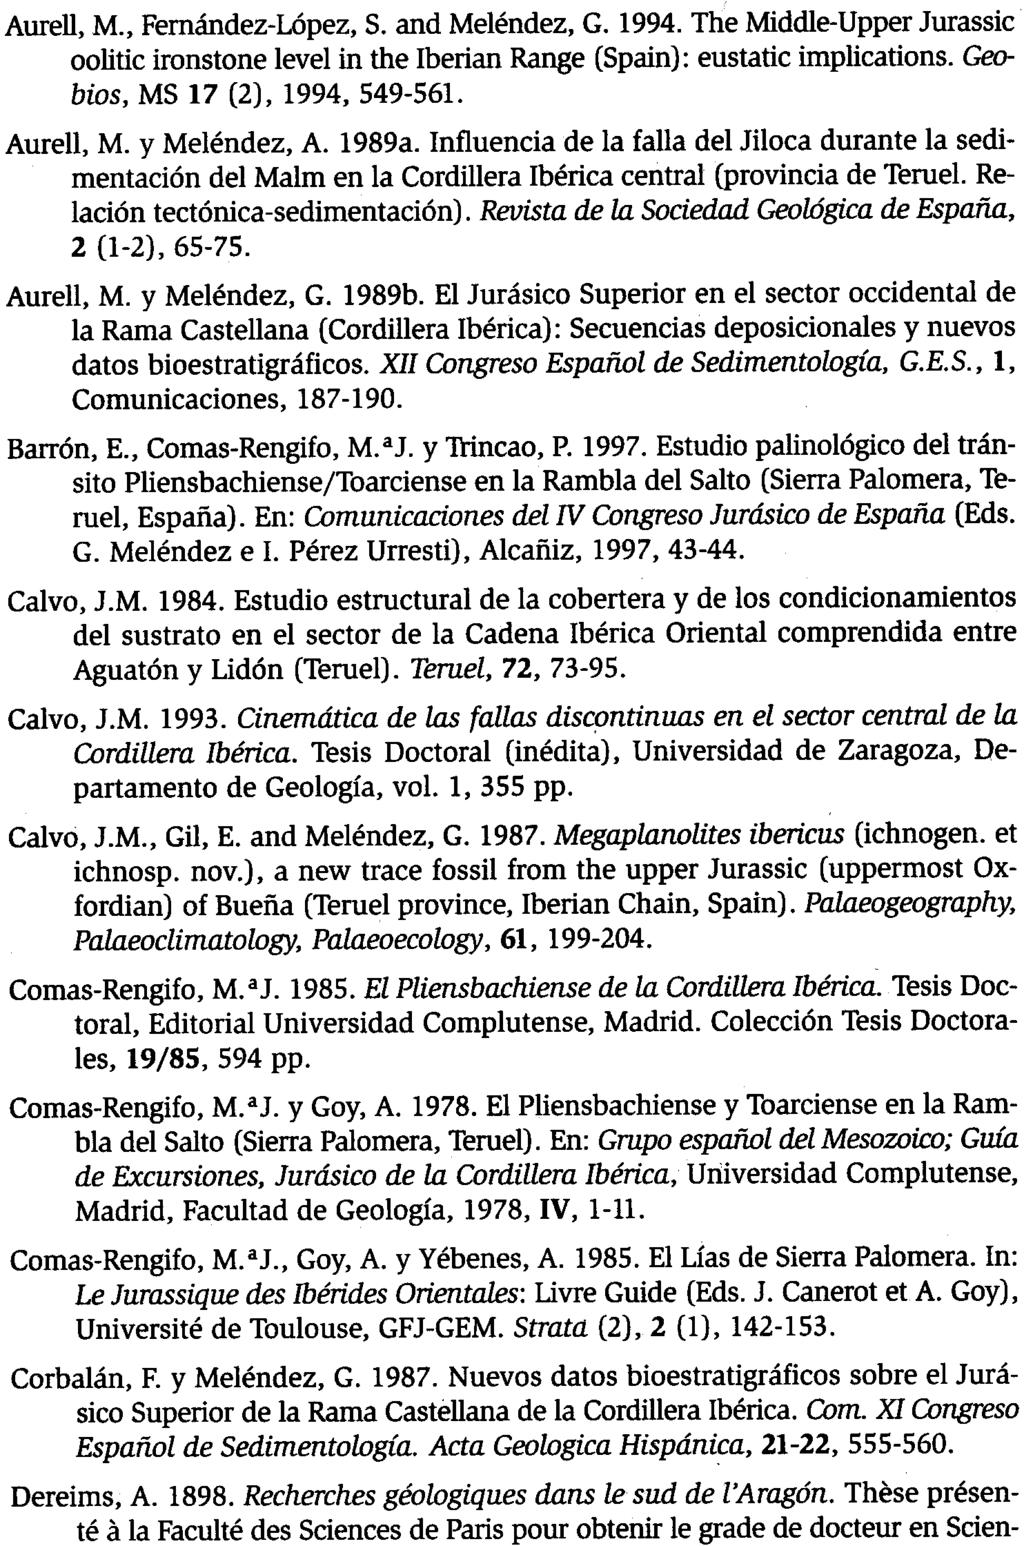 G MF.lFNDF2. S. FERNÁNDEZ-LóPEZ. l. PÉREZ. G. DELVENE. M. J. CoMAS-RENGIFO y A. GOY Aurell, M., Femández-López, S. and Meléndez, G. 1994.